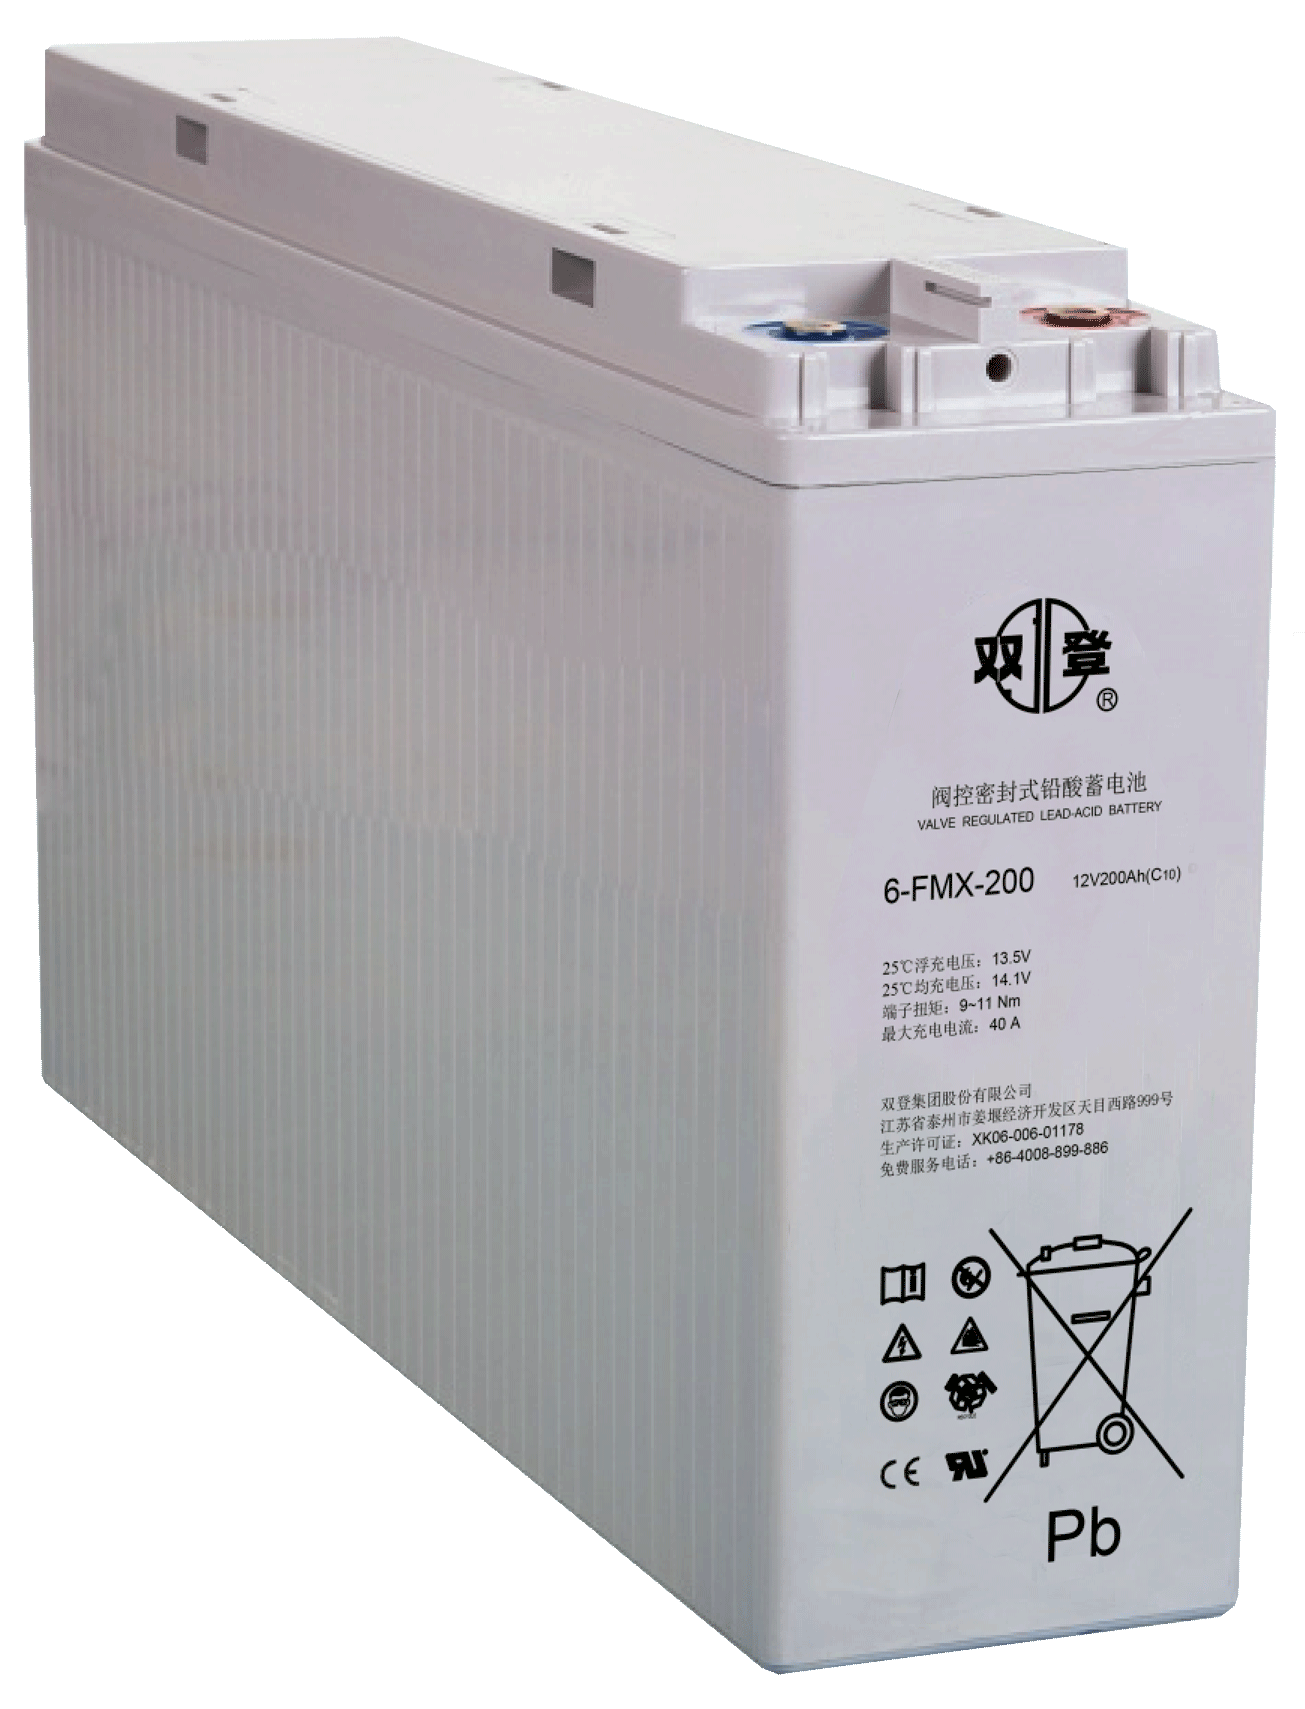 双登蓄电池6-FMX-200 12V200AH狭长蓄电池